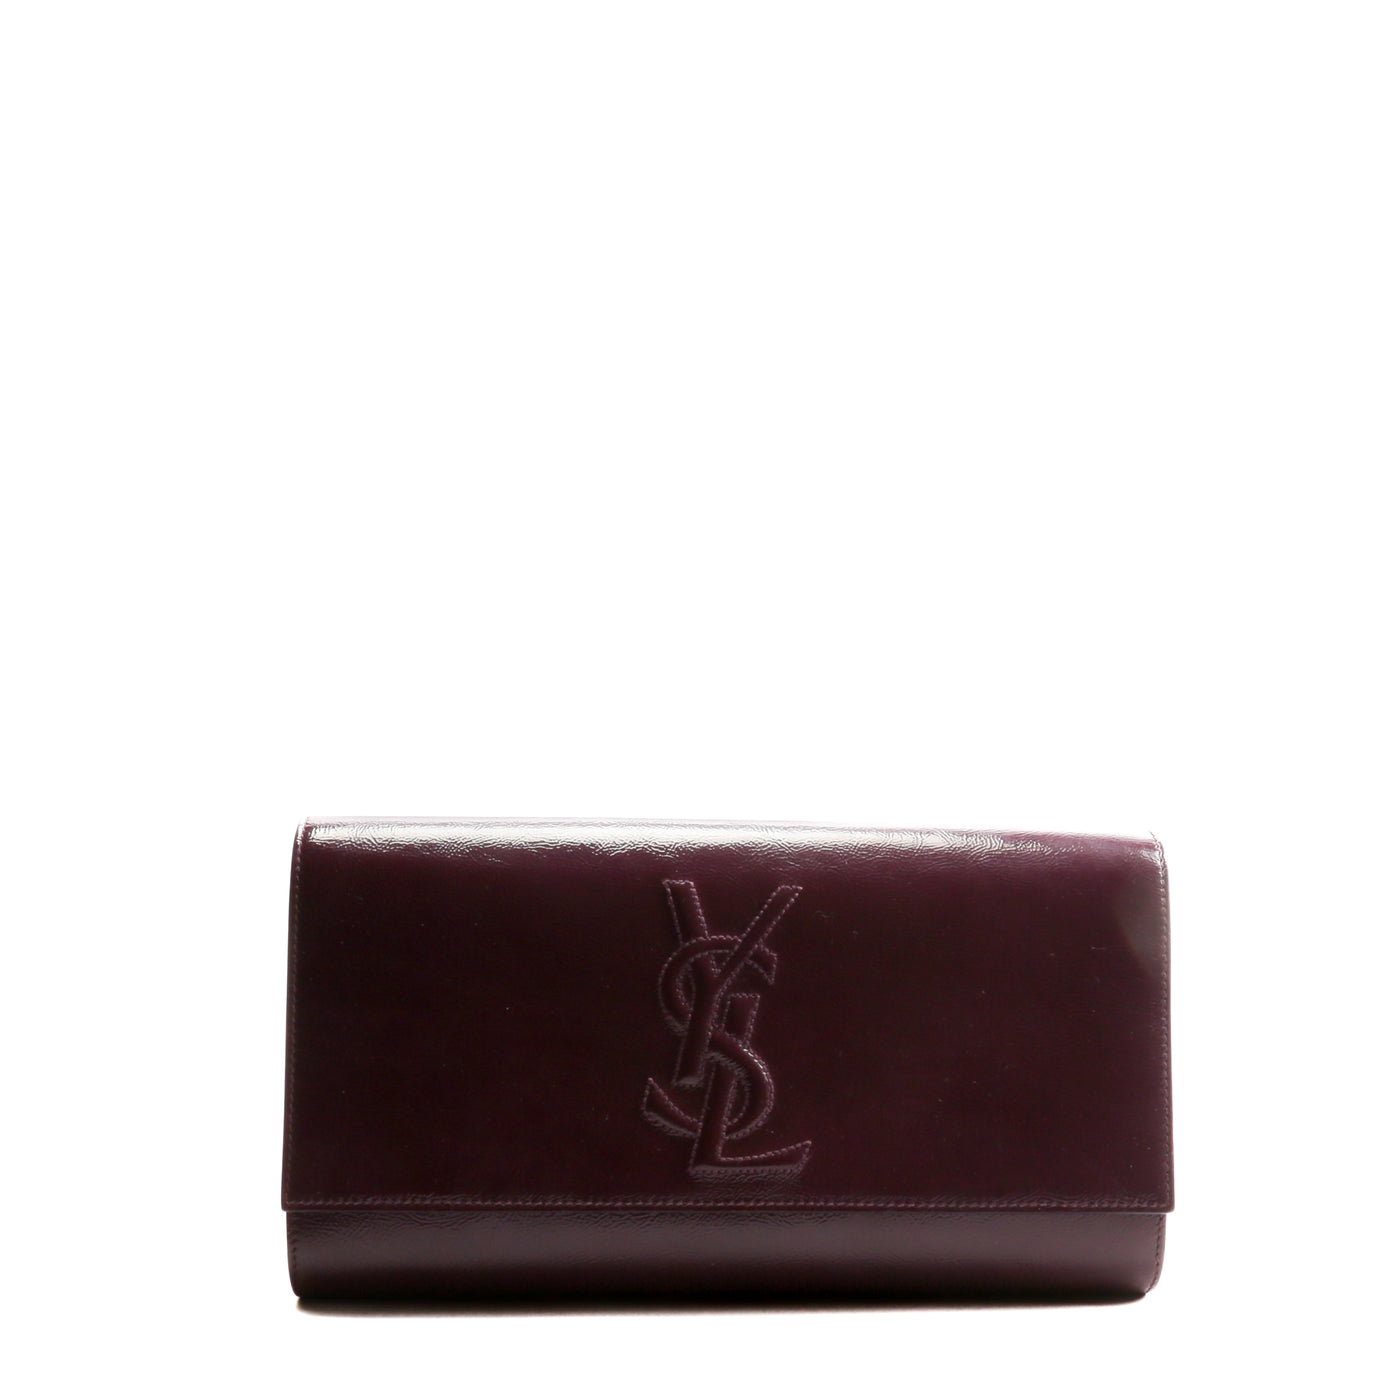 SAINT LAURENT Patent Leather Belle De Jour Clutch - Plum Purple